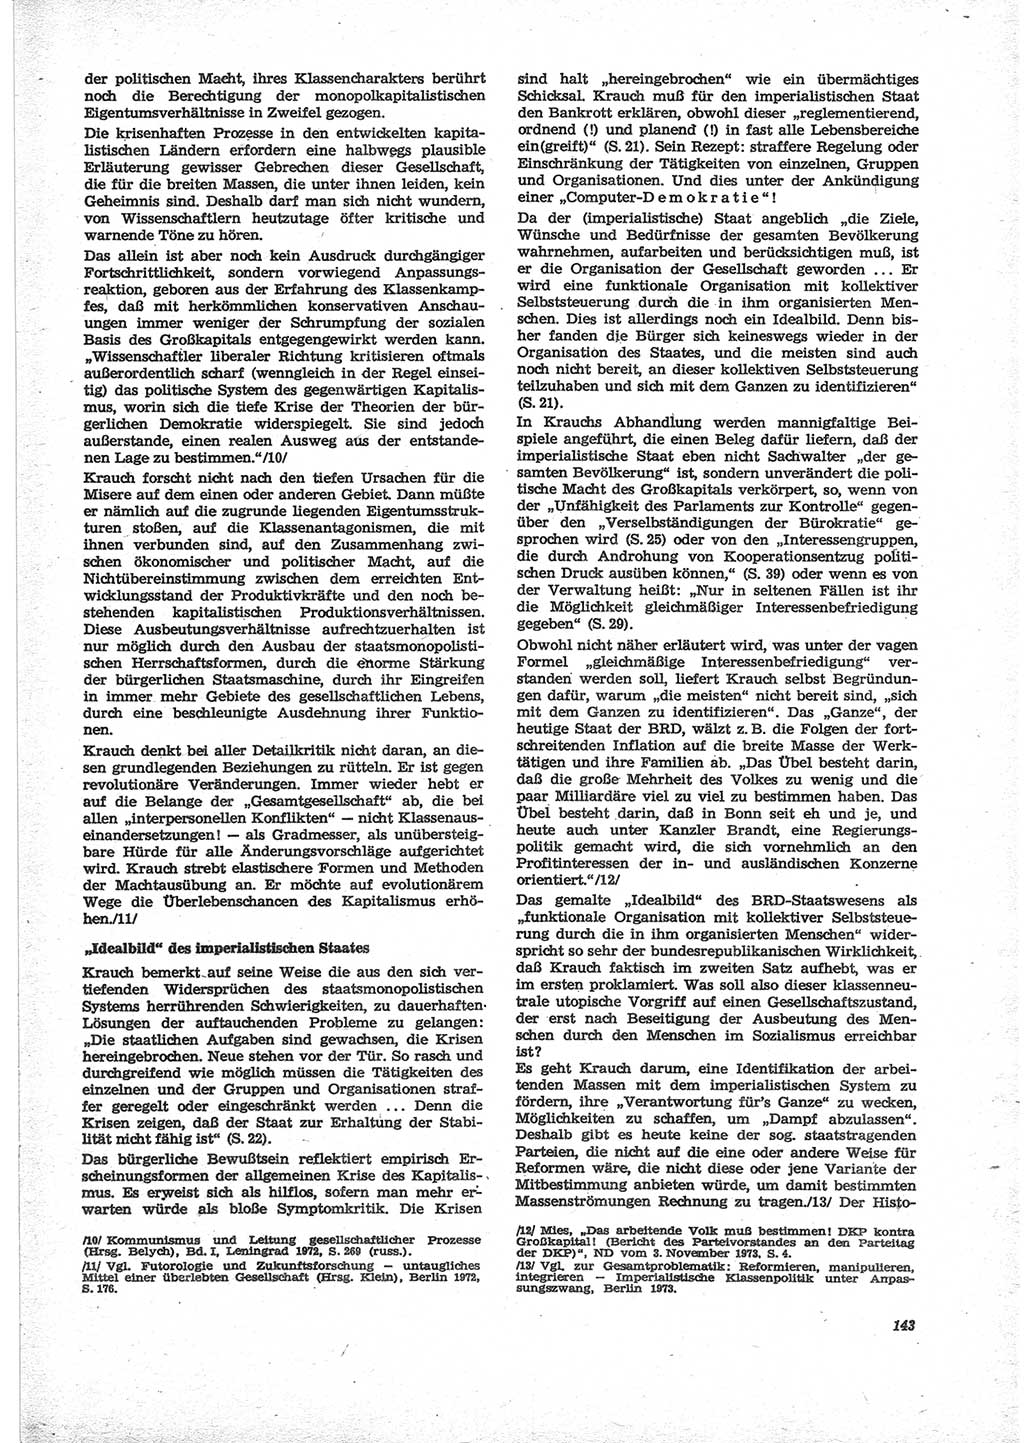 Neue Justiz (NJ), Zeitschrift für Recht und Rechtswissenschaft [Deutsche Demokratische Republik (DDR)], 28. Jahrgang 1974, Seite 143 (NJ DDR 1974, S. 143)